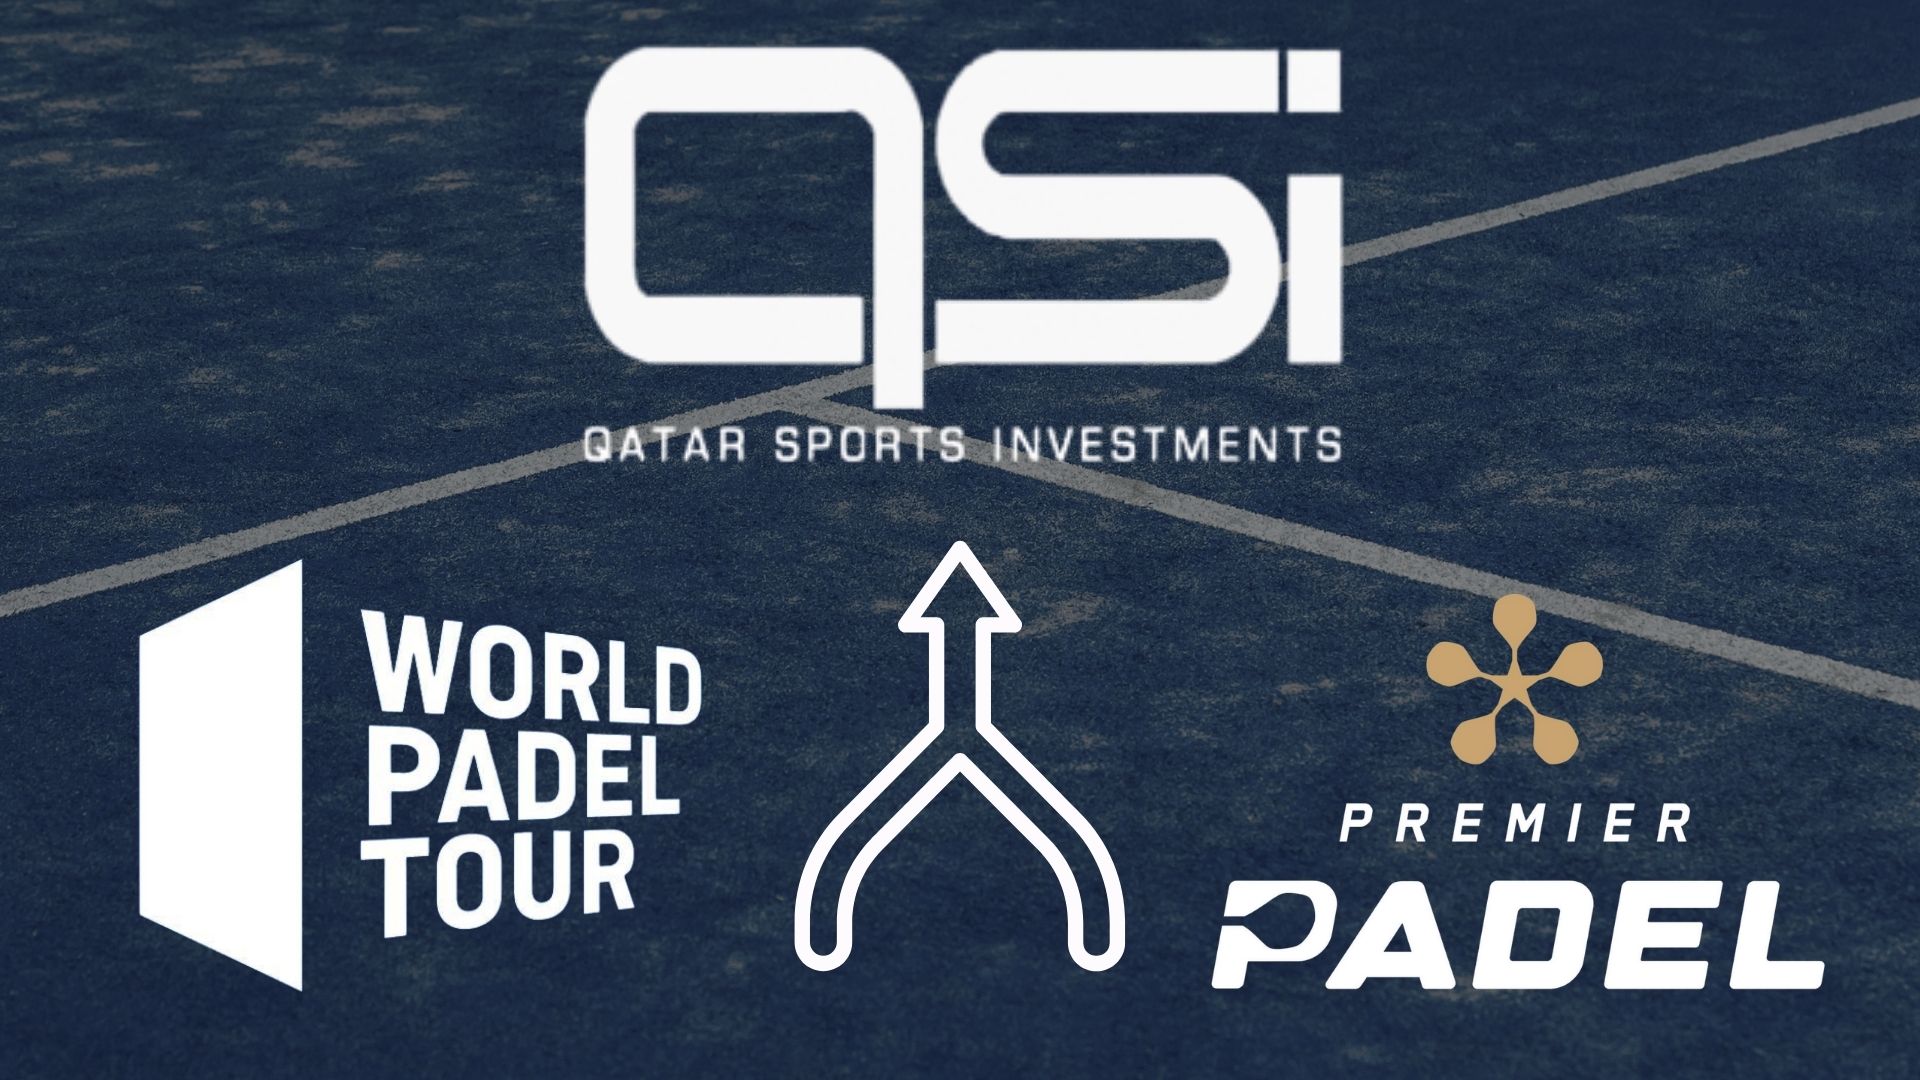 Le World Padel Tour liittyisi Premier Padel vuodesta 2023 alkaen QSI:ssä